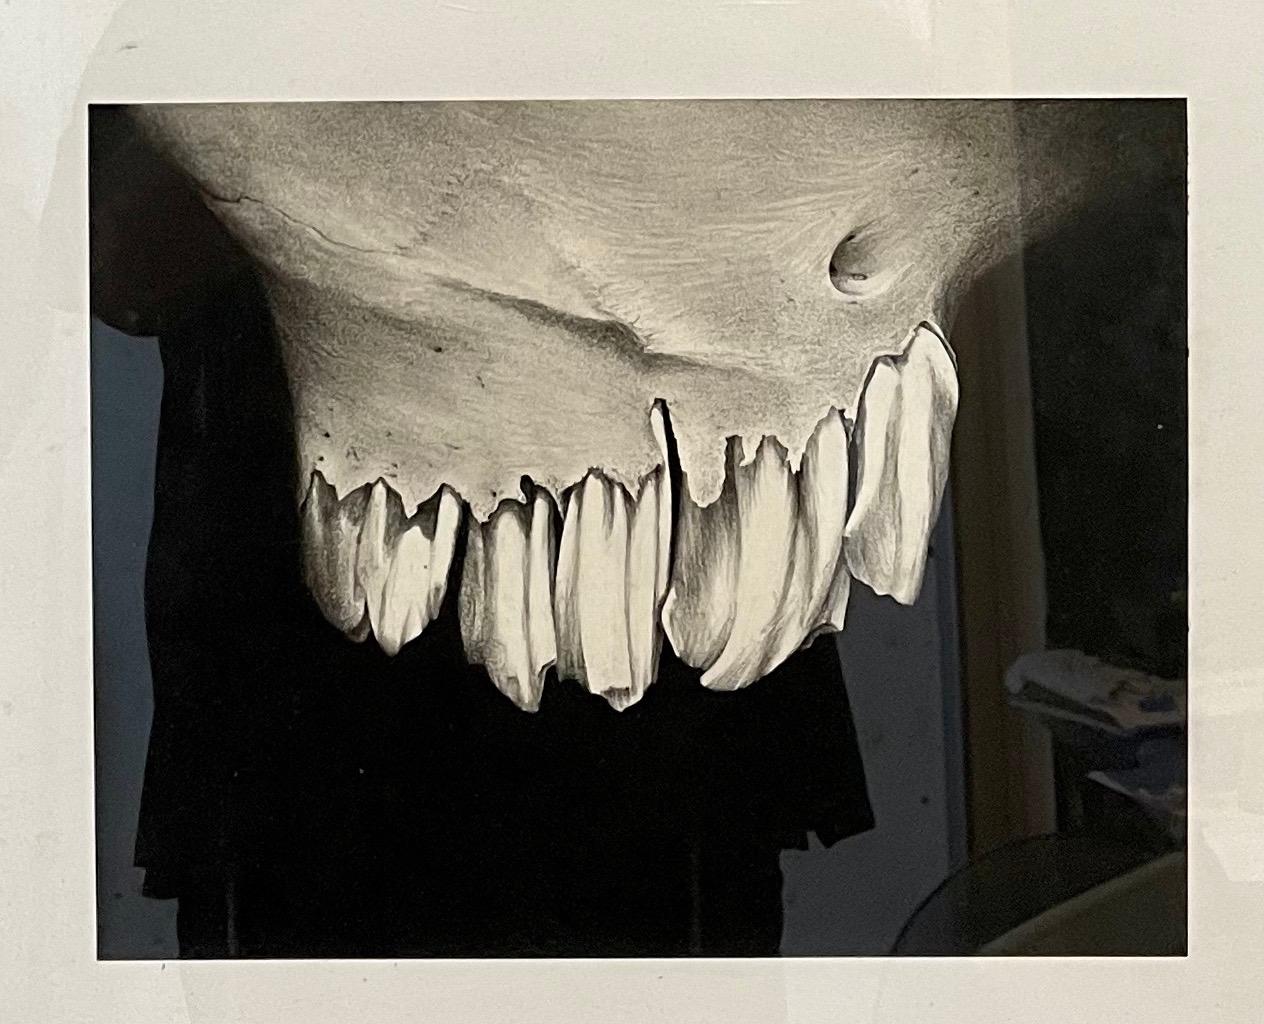 Zeichenkohle Zeichnung Abstrakte Teeth Bone Erica Child Prudhomme Amerikanische Frau Künstlerin (Naturalismus), Art, von Erica Child Prud’homme